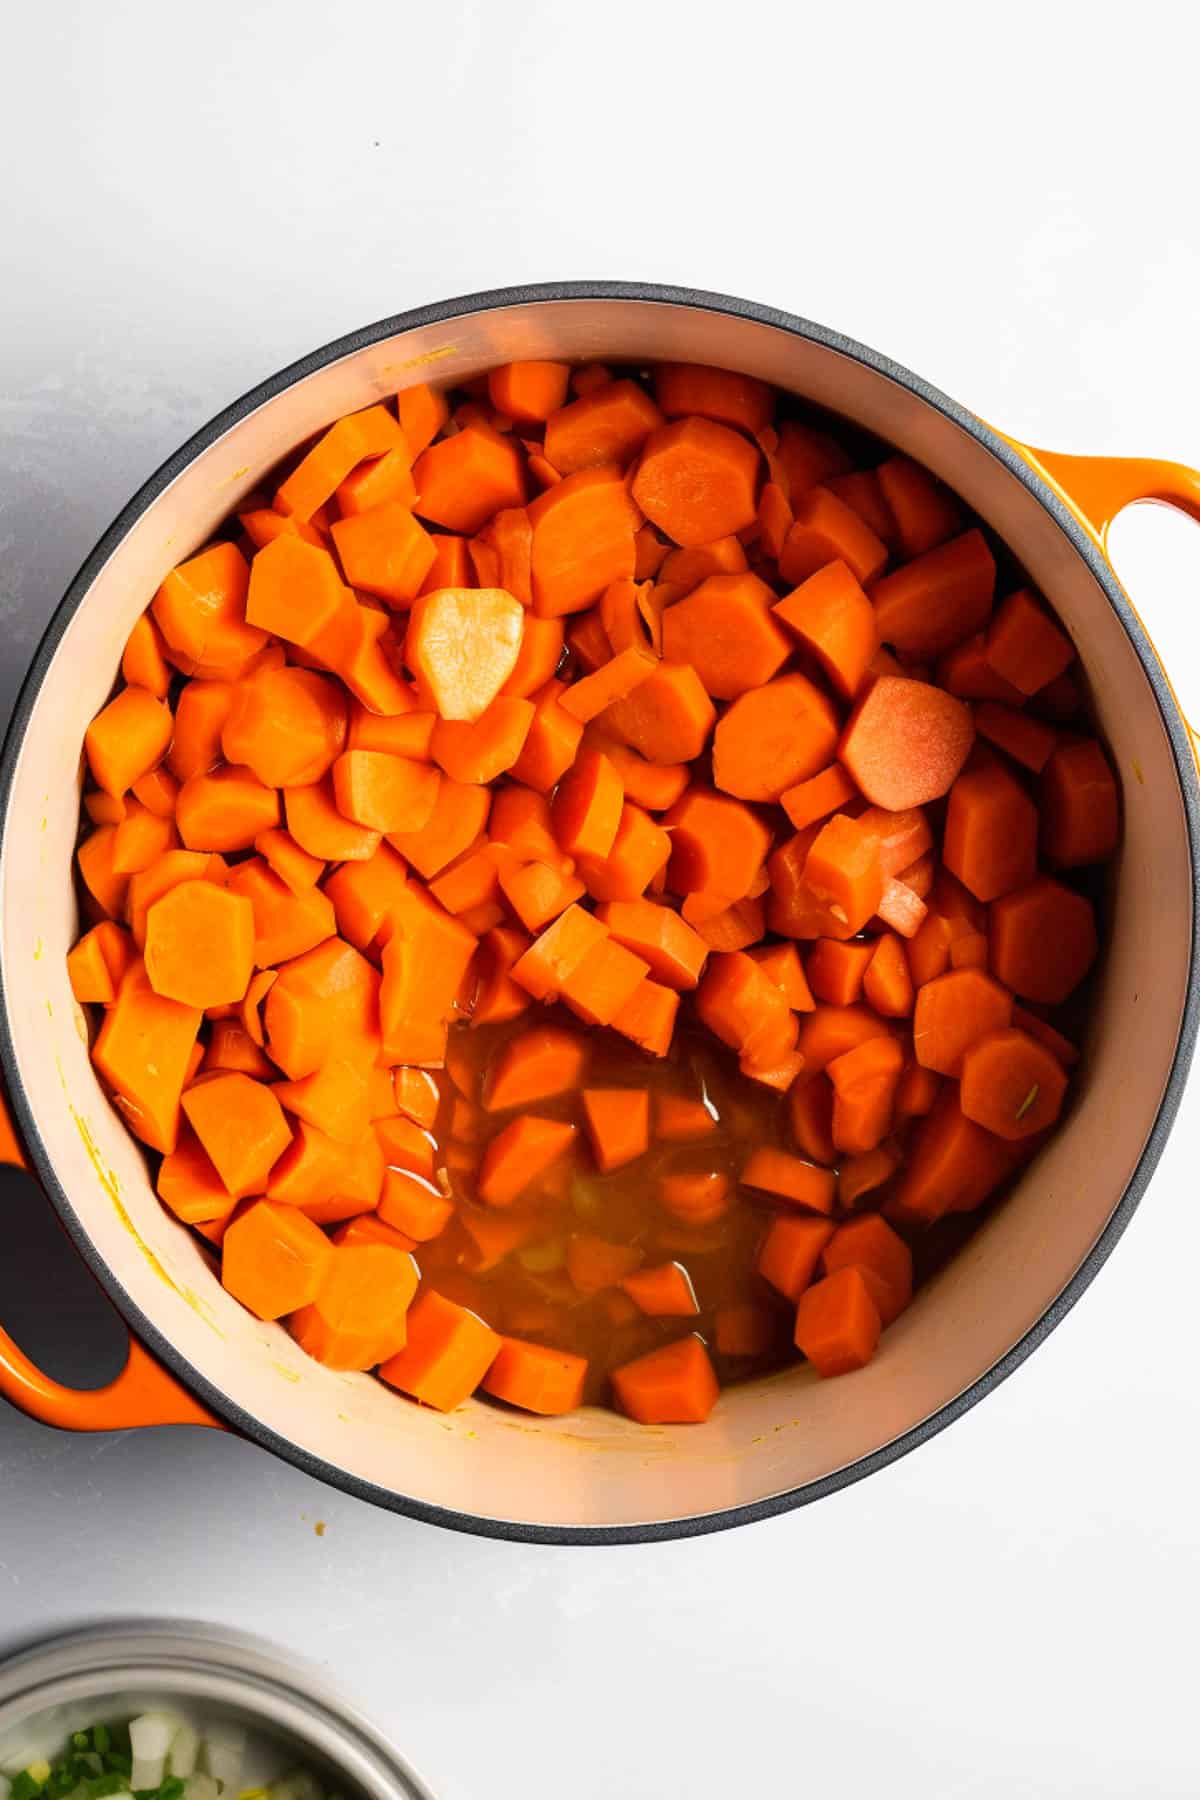 Carrot and Coriander Soup - Creme De La Crumb